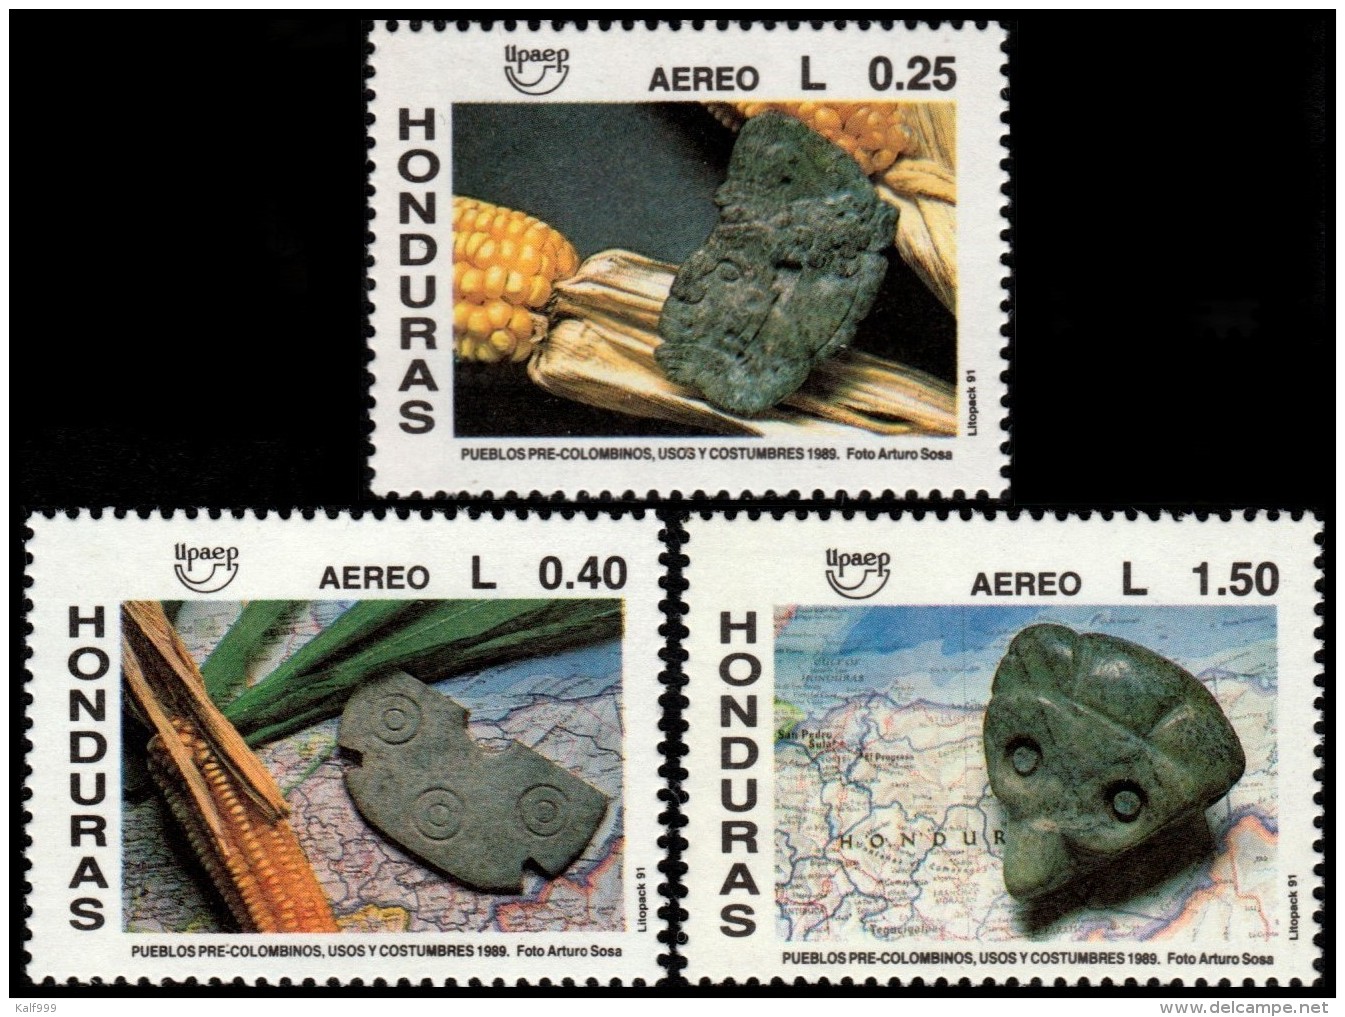 ~~~ Honduras 1991 - UPAEP Archeology  Good Set - Mi. 1119/1120 ** MNH OG ~~~ - Honduras